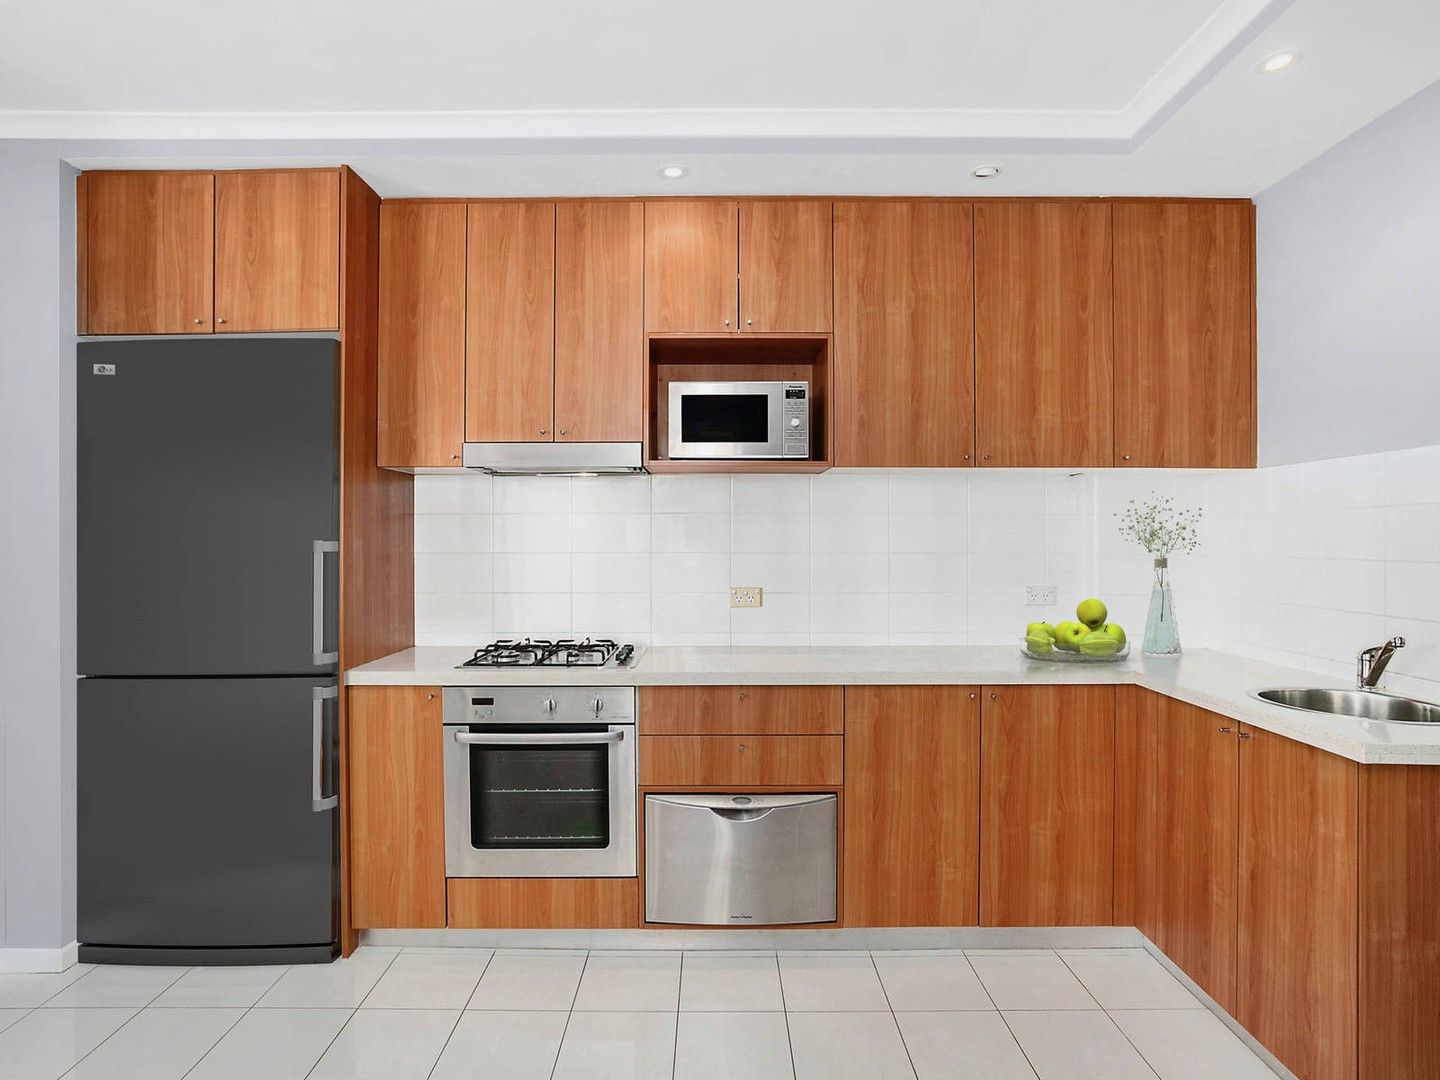 1 bedrooms Apartment / Unit / Flat in 1508/41 Waitara Avenue WAITARA NSW, 2077